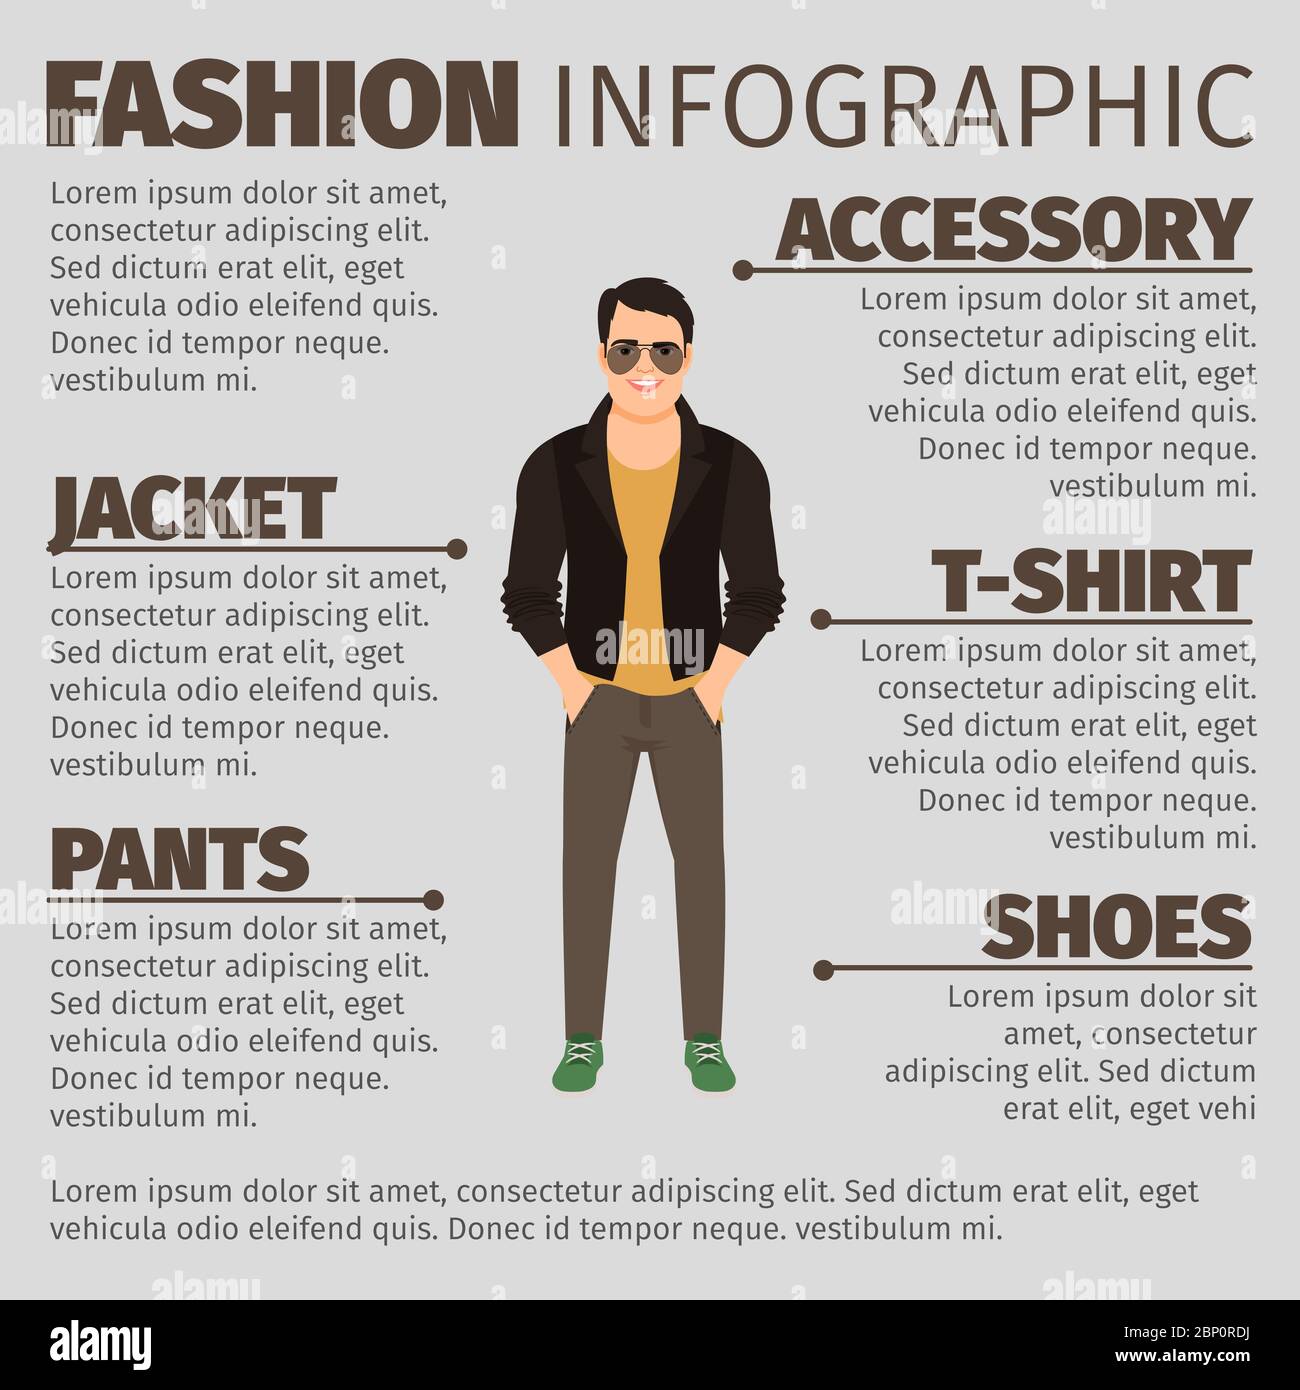 Infographie de mode avec homme dans une veste en cuir. Illustration vectorielle Illustration de Vecteur